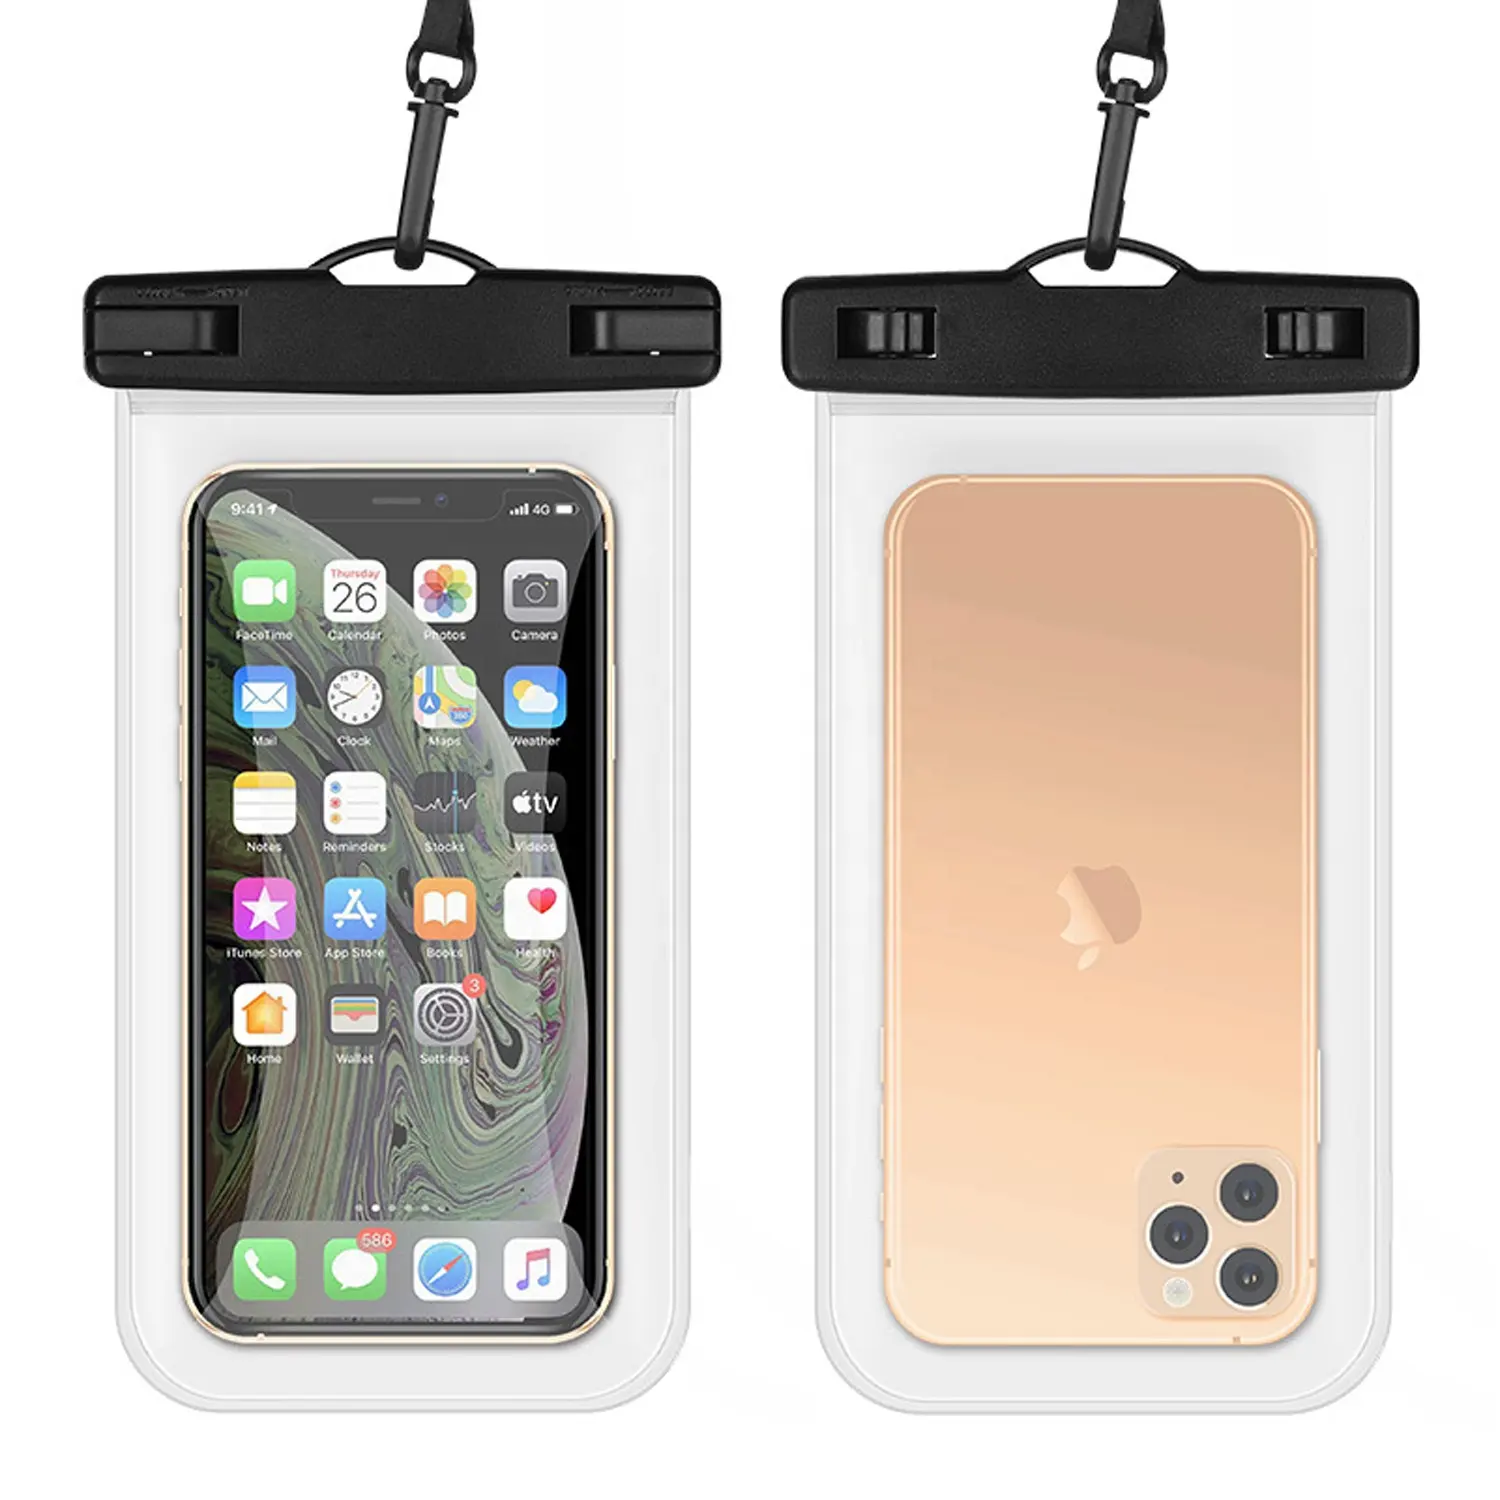 Universal Waterproof Phone Case, Water Proof Phone Pouch Bag, 7'', IPX8 Waterproof